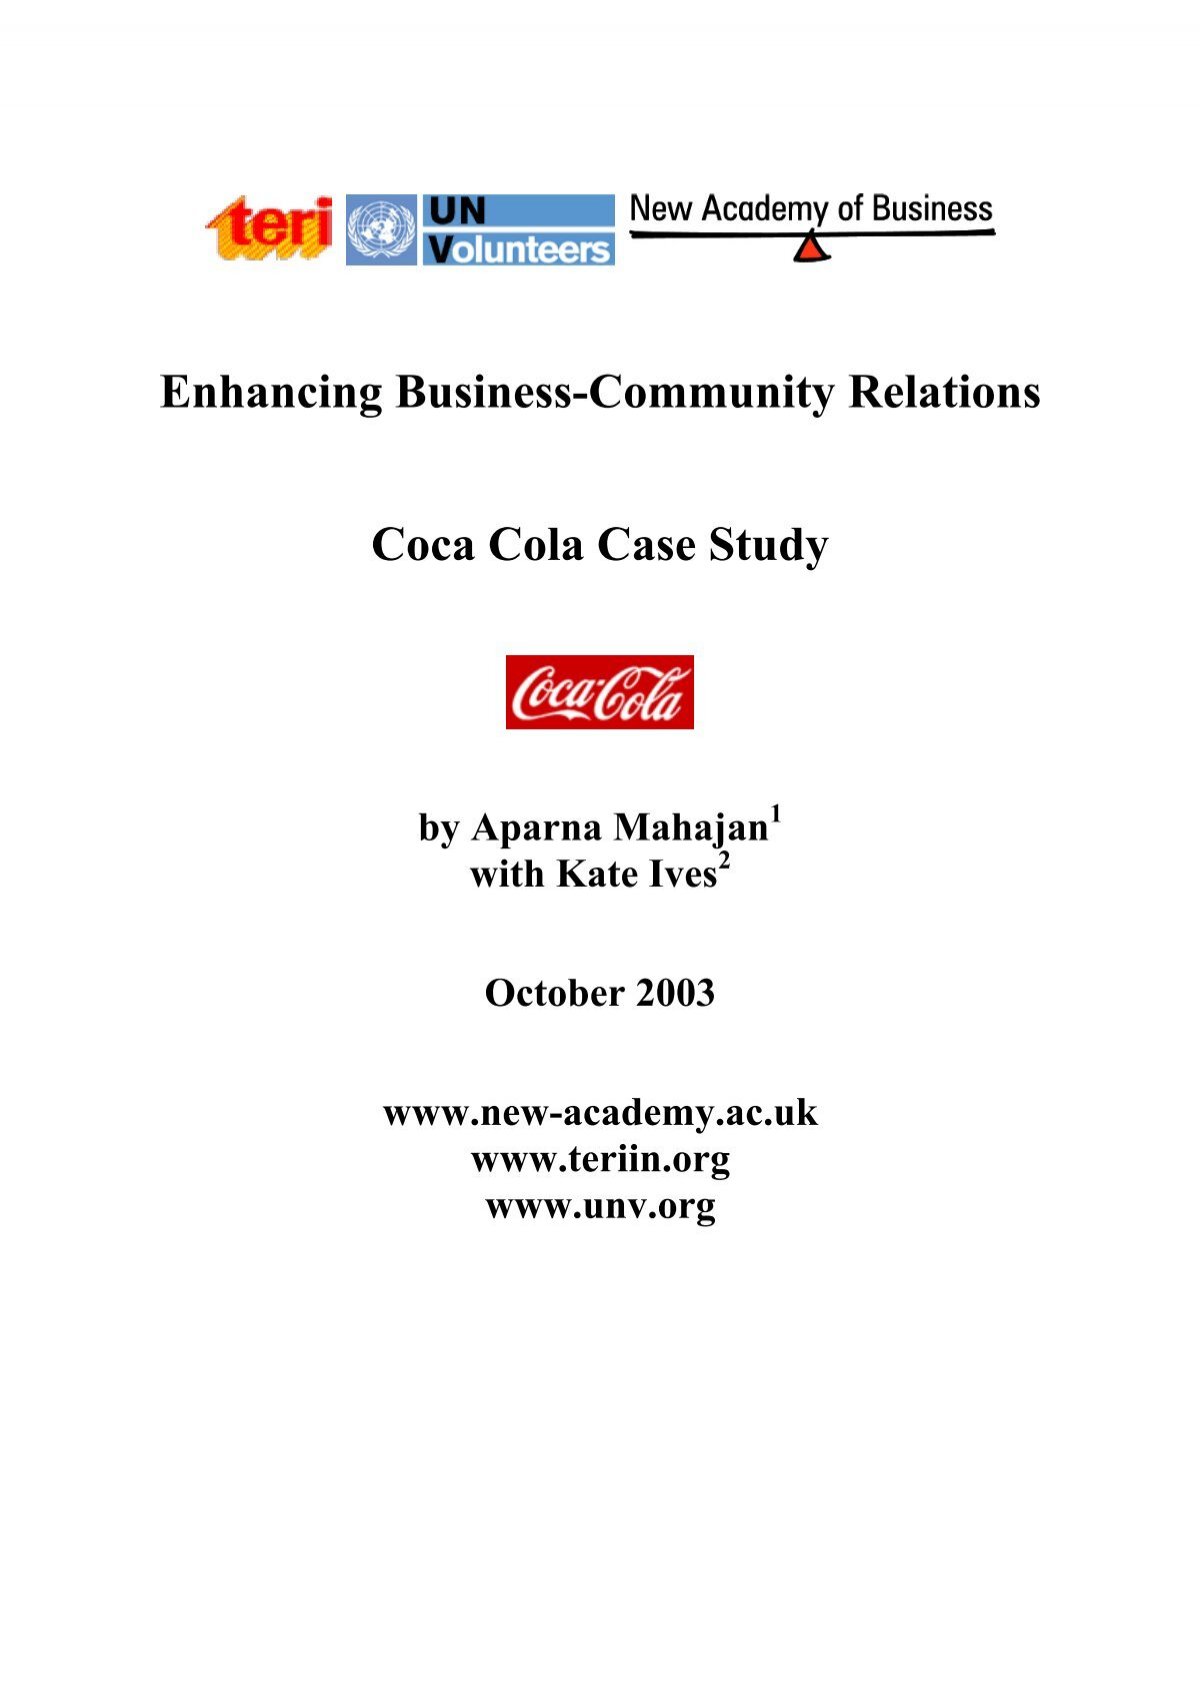 coca cola case study answers